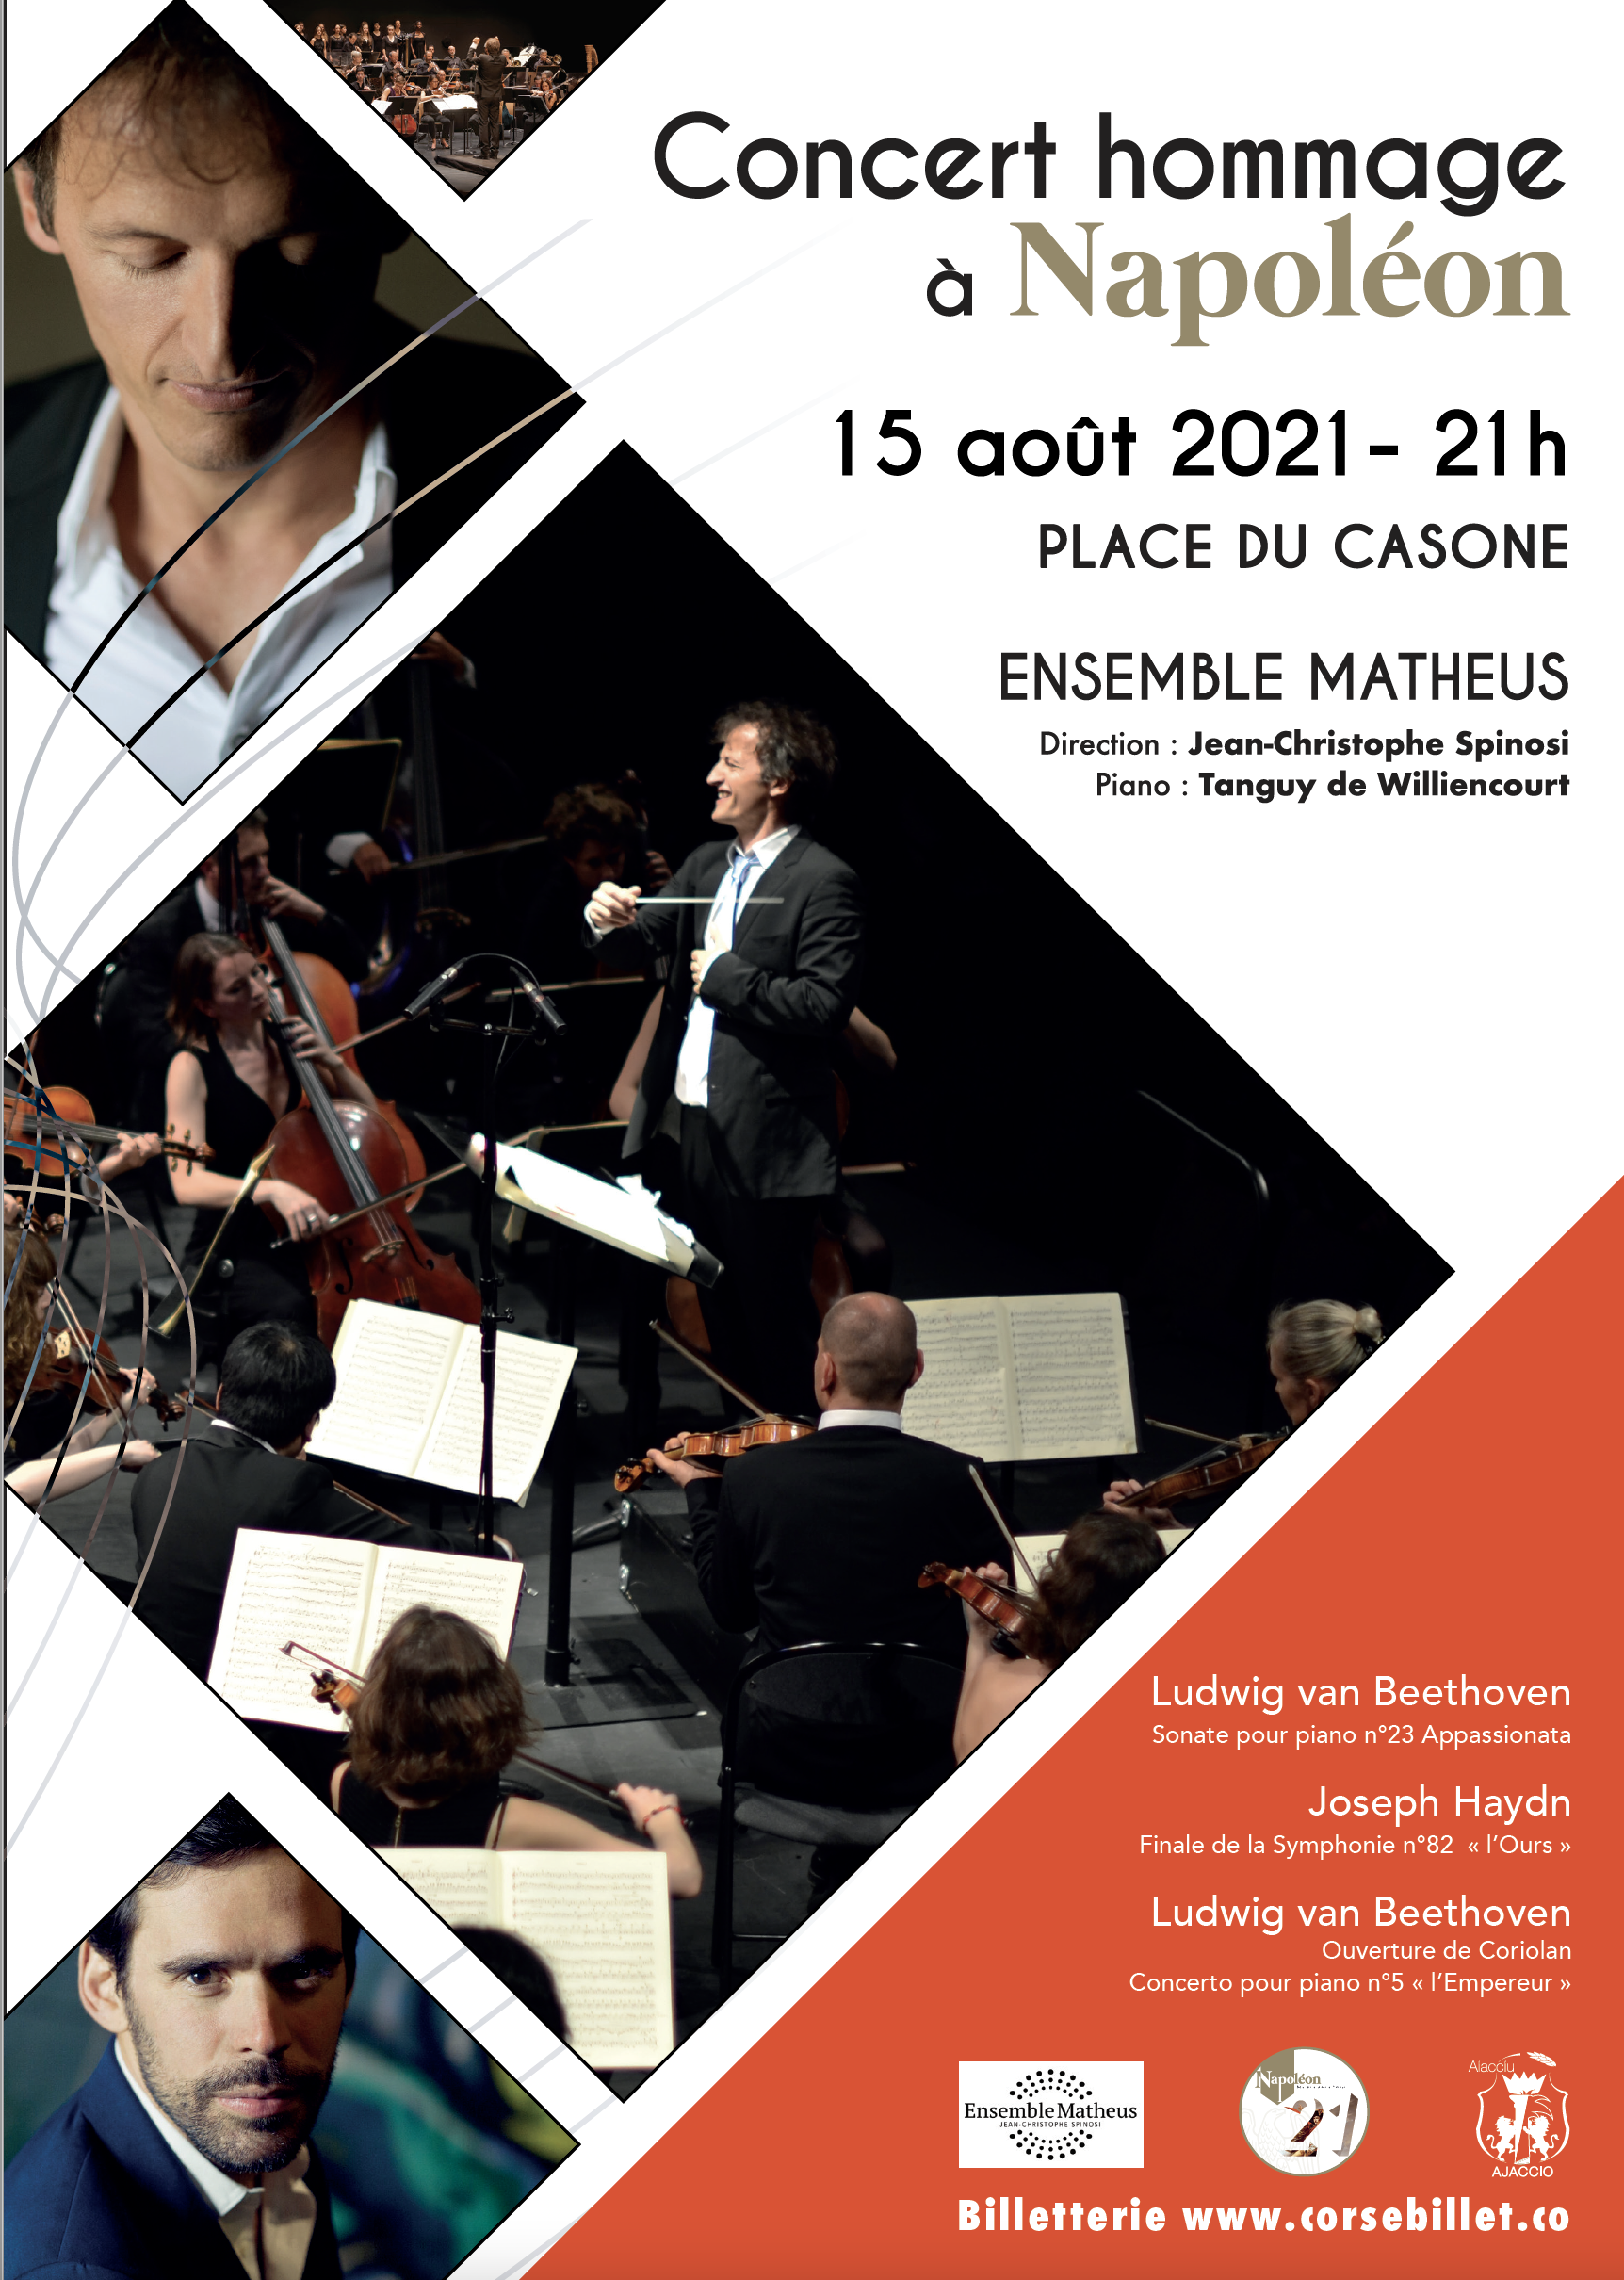 Ensemble Matheus / Edouard Brane